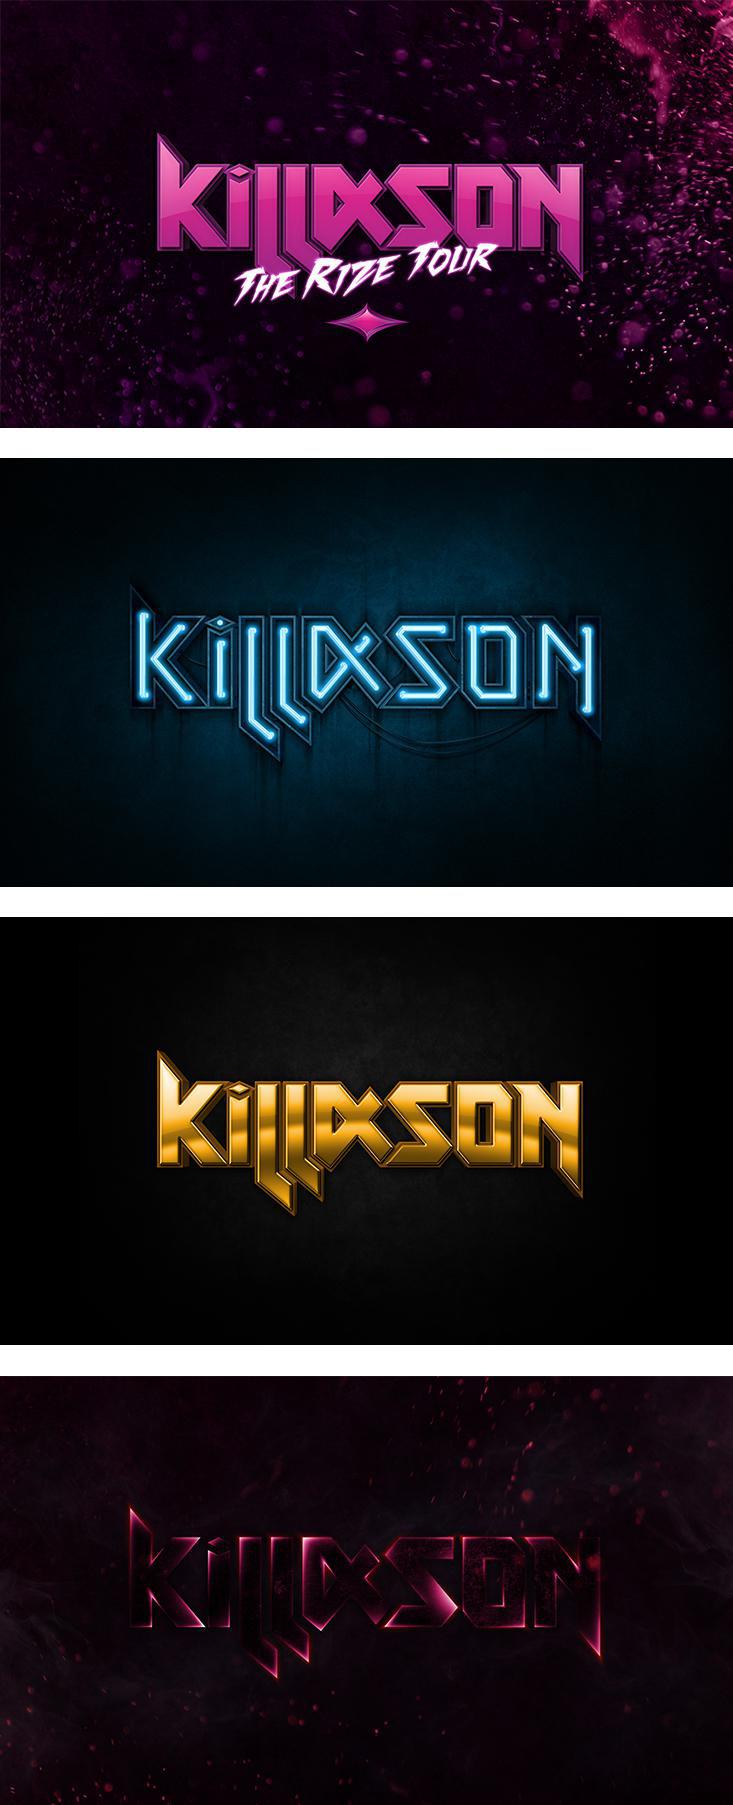 Identité visuelle KillASon